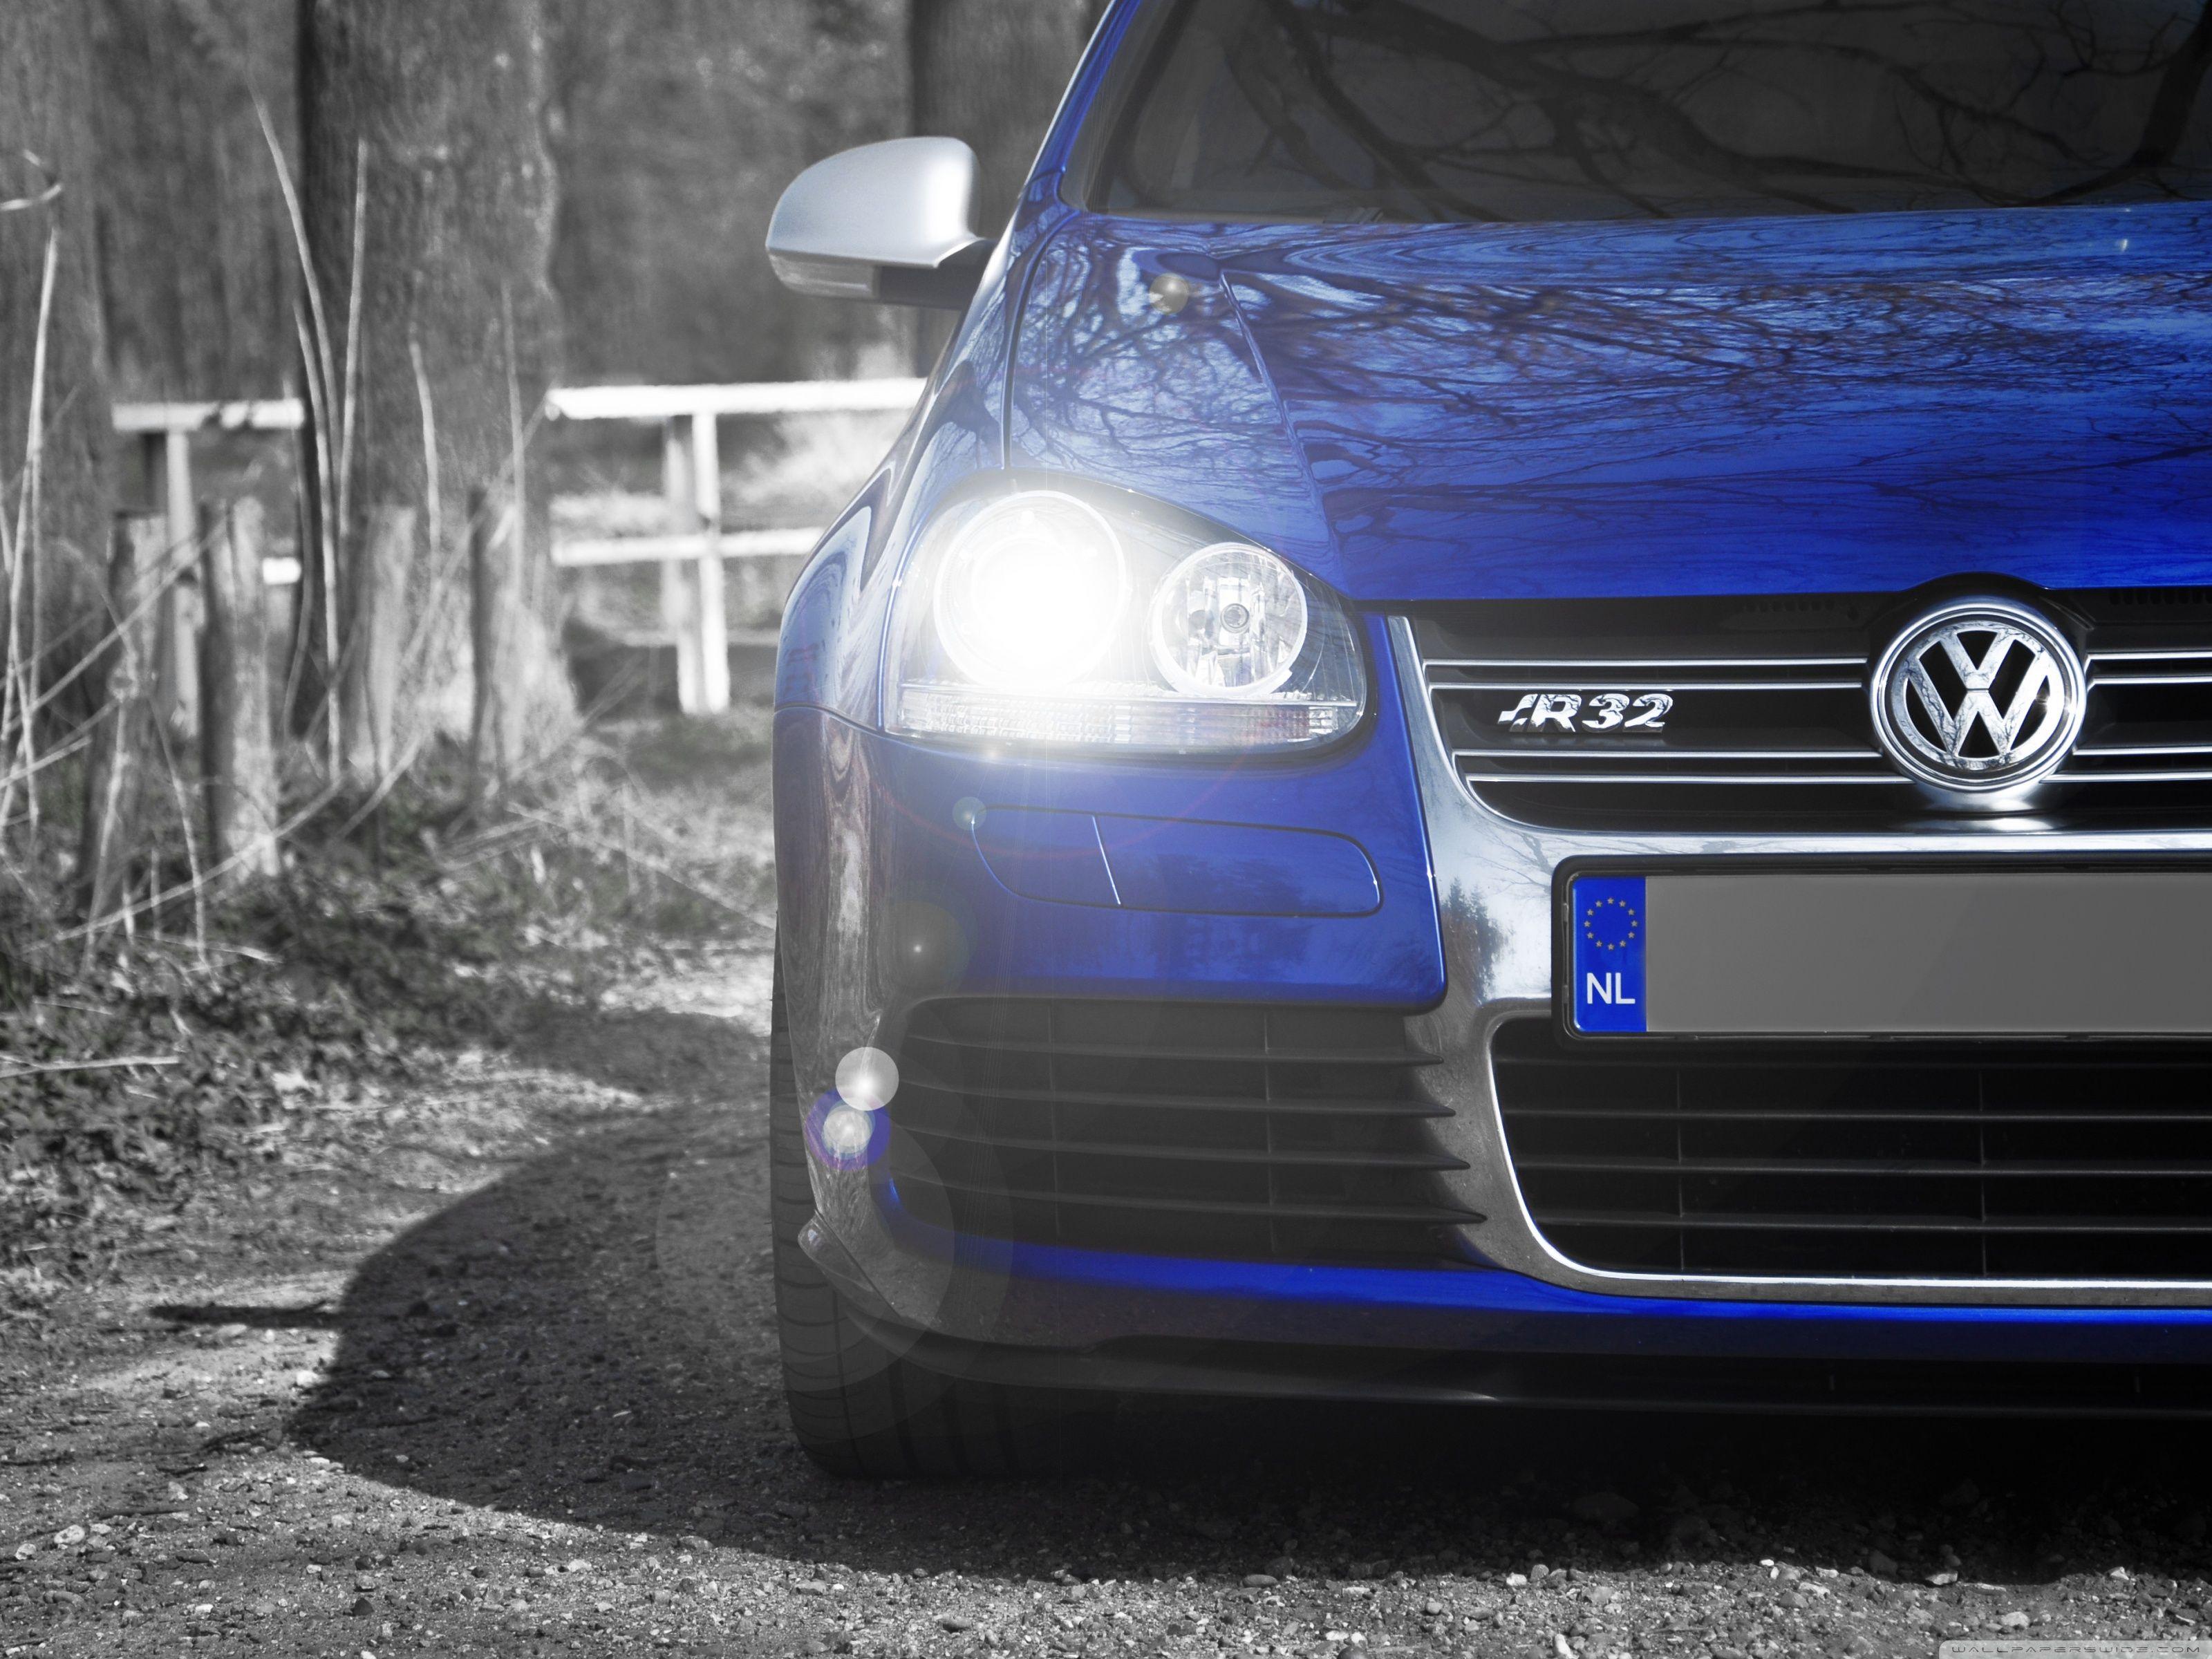 Volkswagen Golf R32 Blue HD desktop wallpaper, Widescreen, High